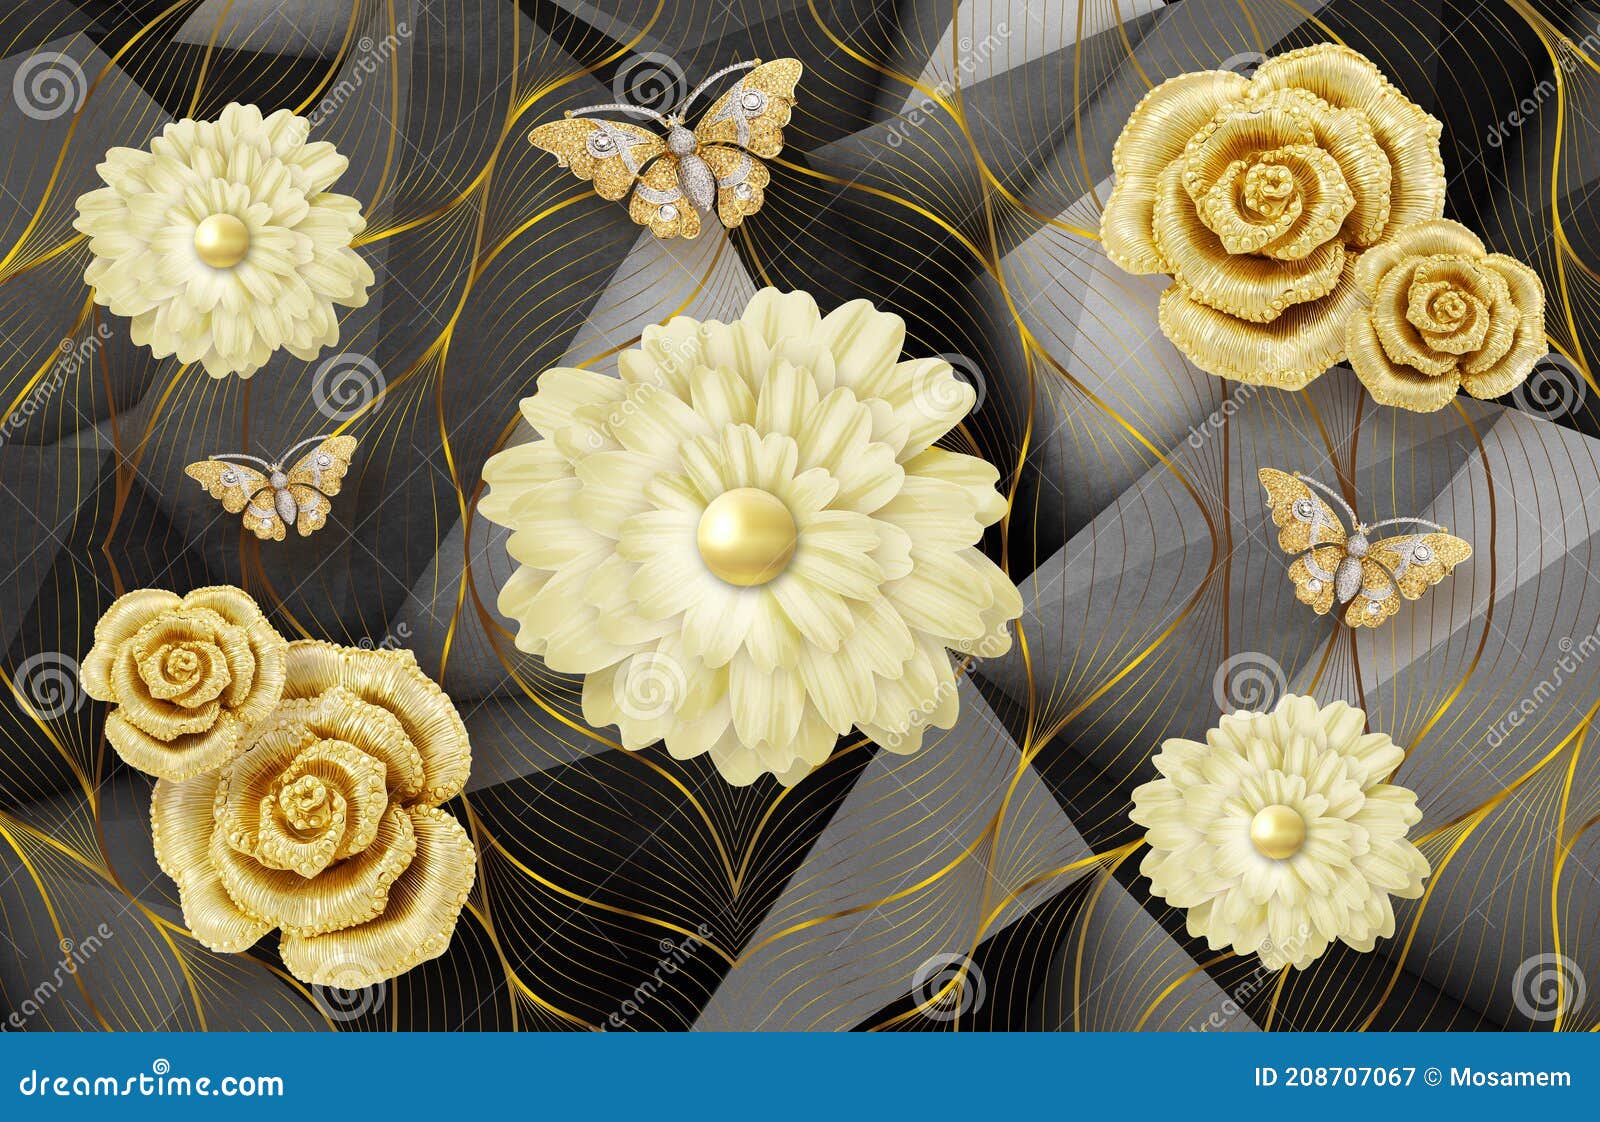 Papel De Parede Mural 3d Para Parede . Fundo Preto Abstrato Com Linhas De  Flores Douradas E Borboleta . Imagem de Stock - Imagem de elegante,  sobremesa: 208707067